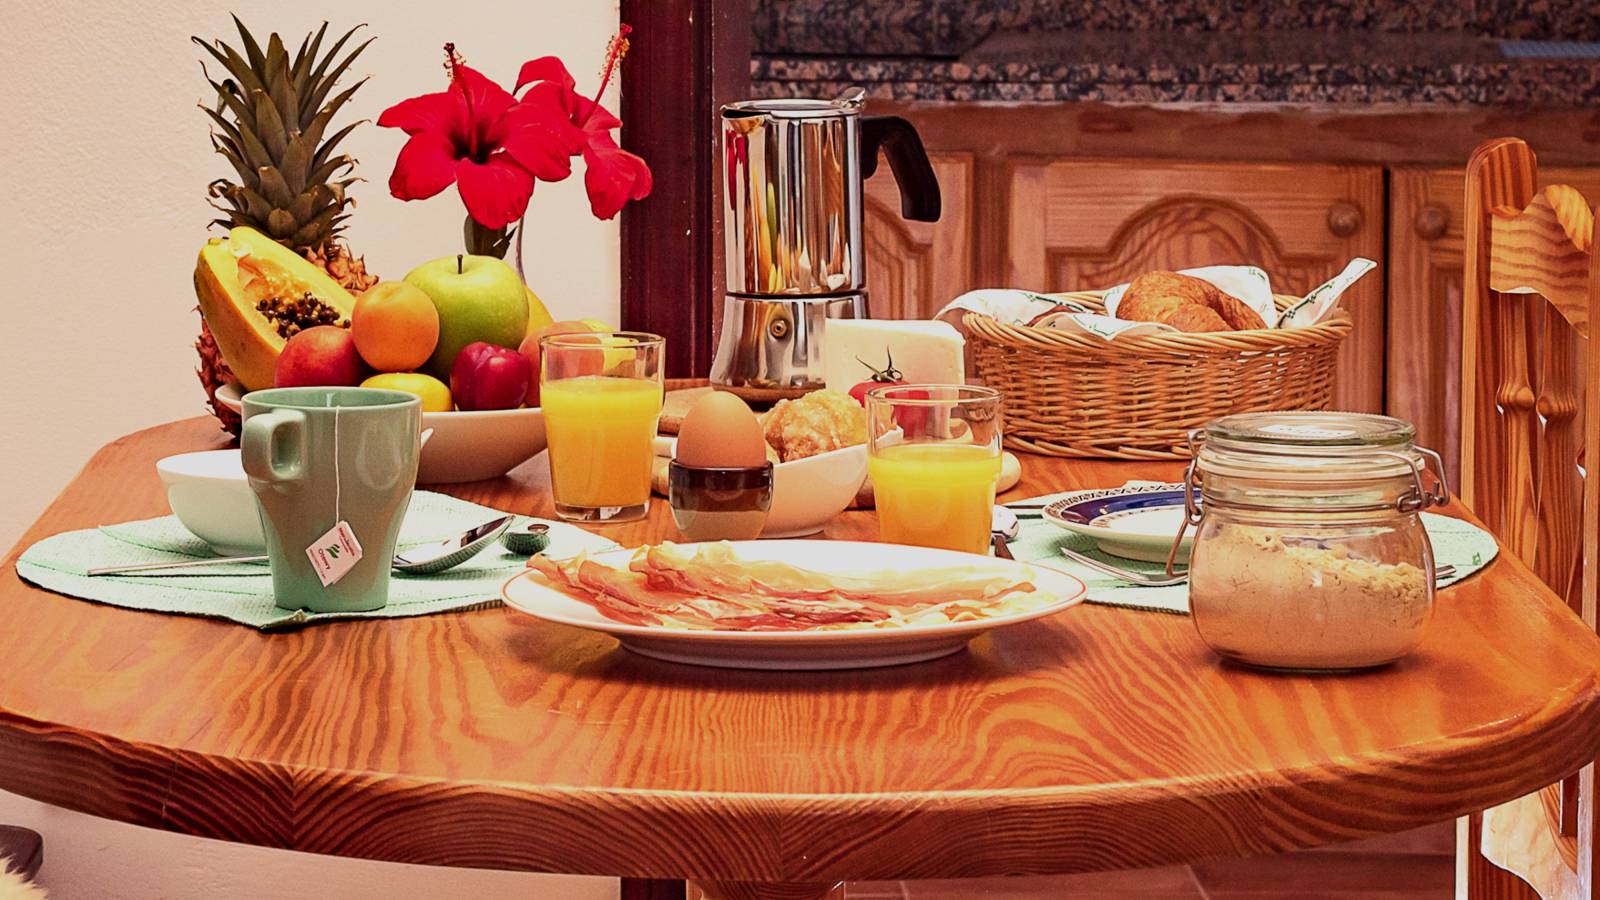 Nuestro hostal en Tenerife te ofrece un desayuno saludable